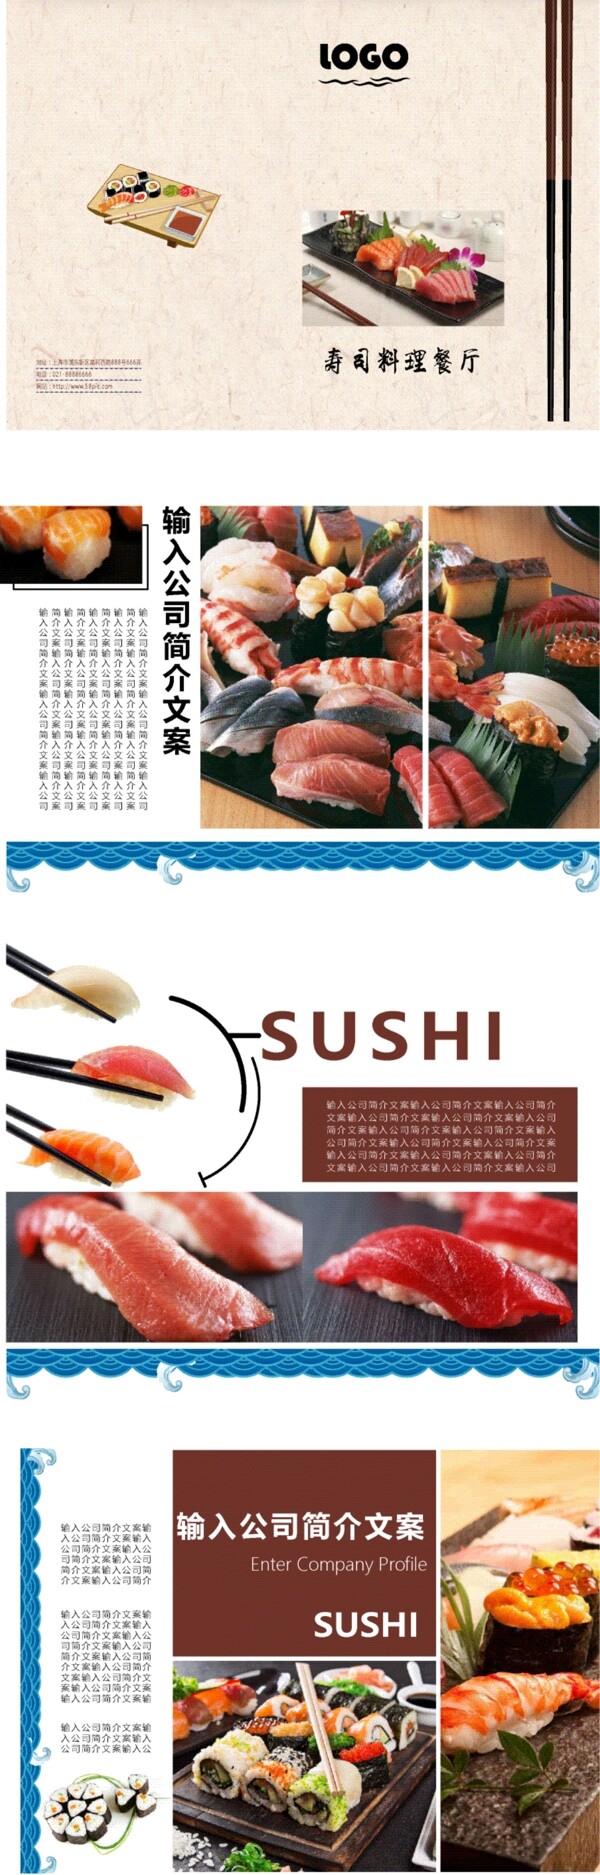 日式寿司餐厅宣传册